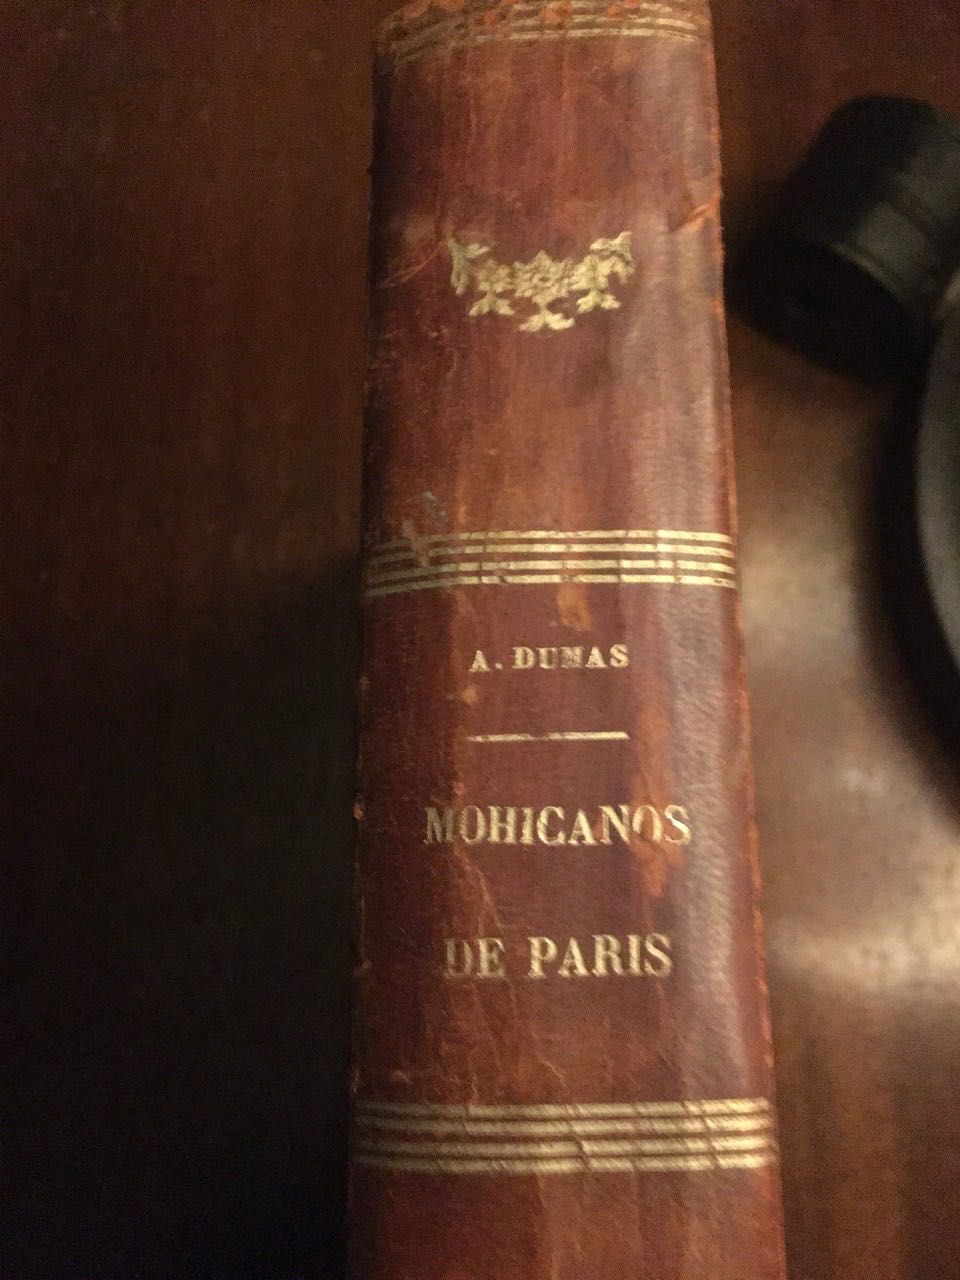 Mohicanos de Paris , 1887 - segunda parte "SALVADOR" A. Dumas